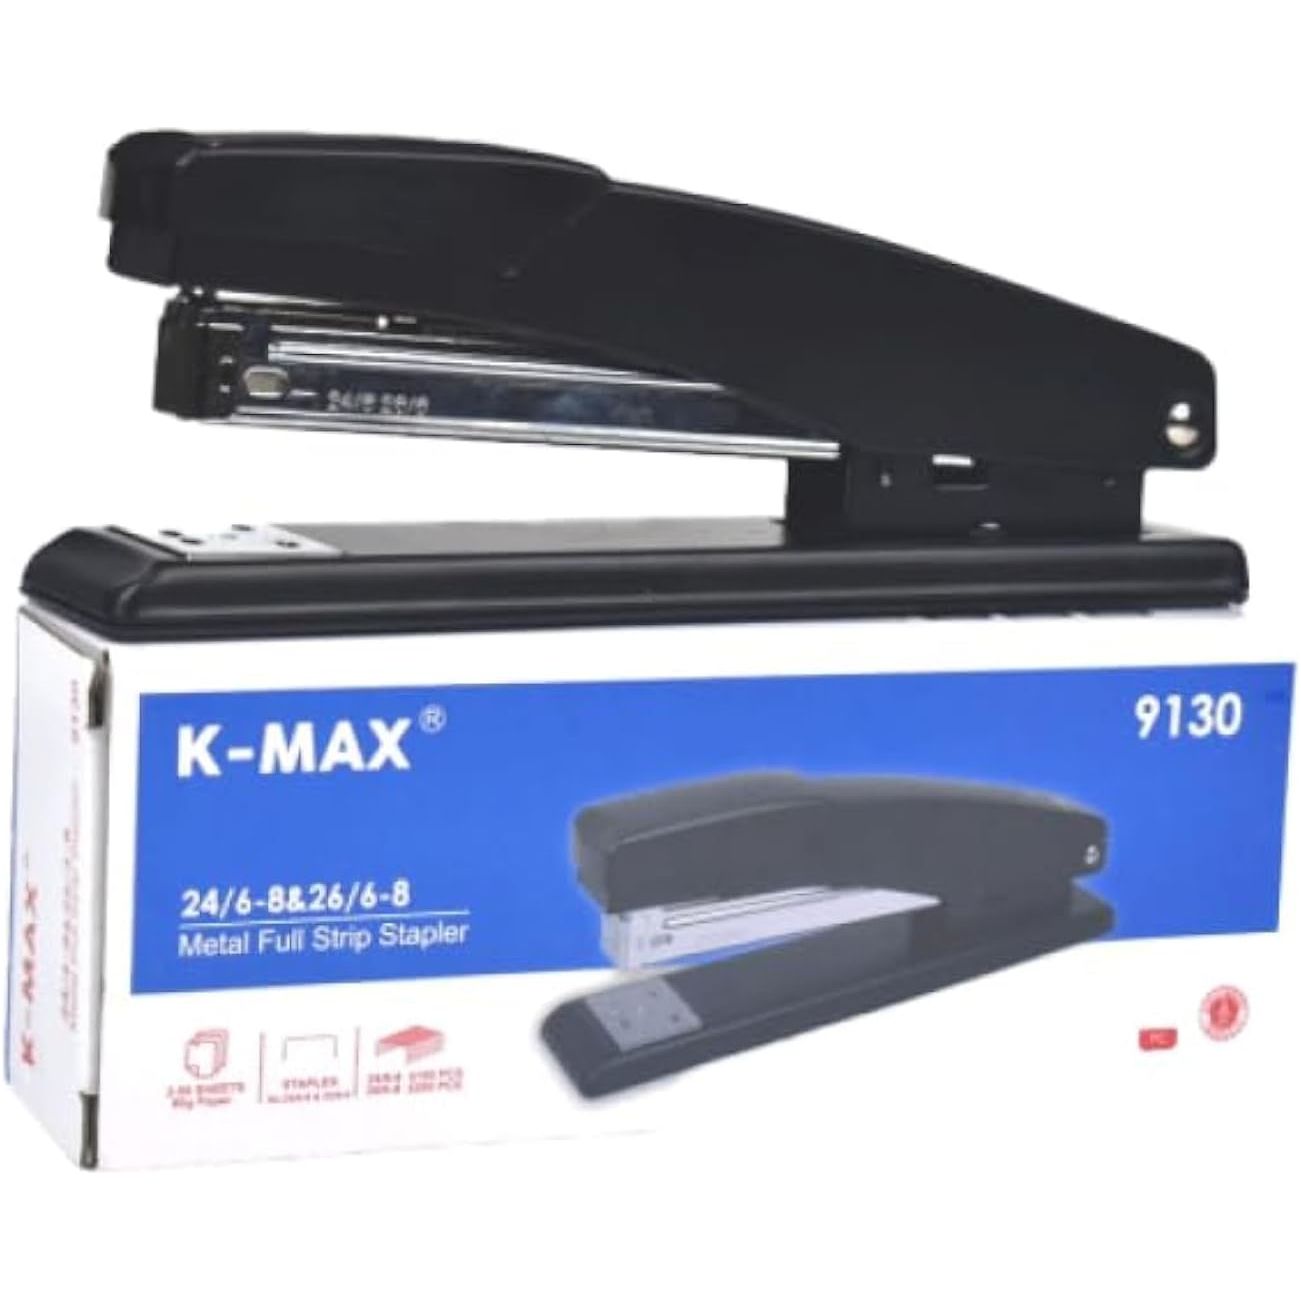 K-Max 9130 Stapler, 24/6-8 & 26/6-8 Staple Size